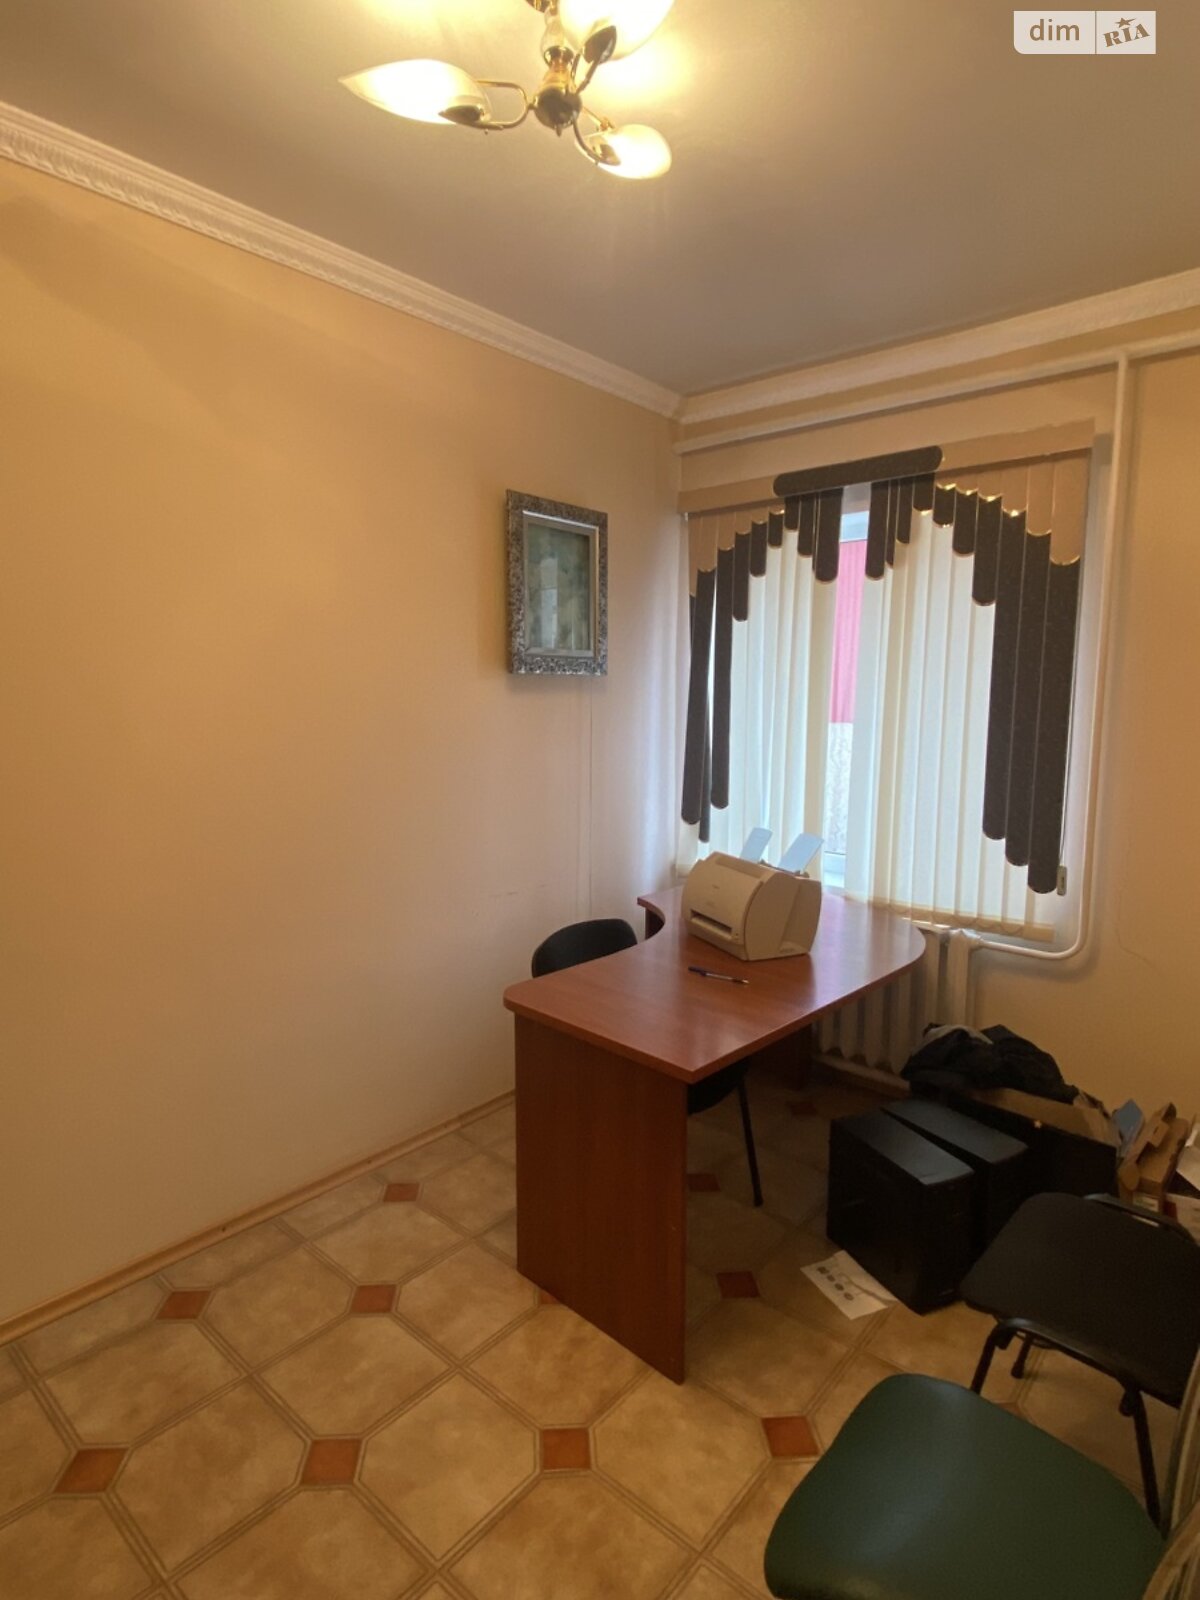 Аренда офисного помещения в Николаеве, Слободская 1-я улица 62, помещений - 10, этаж - 2 фото 1